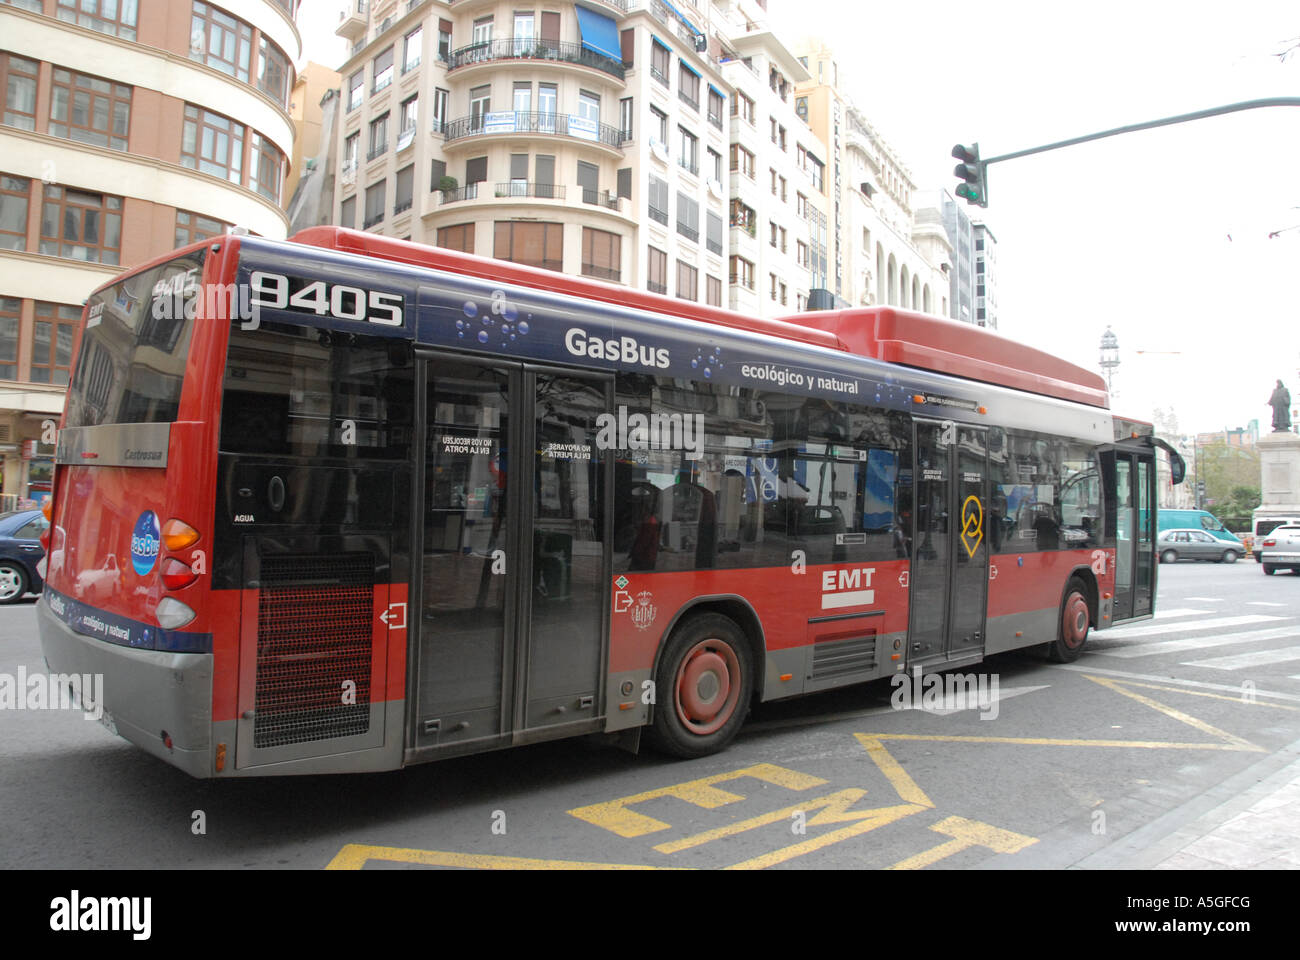 Dieser Bus fährt auf dem umgebauten Gas als Alternative zum Dieselkraftstoff. Es ist eines der wenigen in Valencia, Spanien Stockfoto